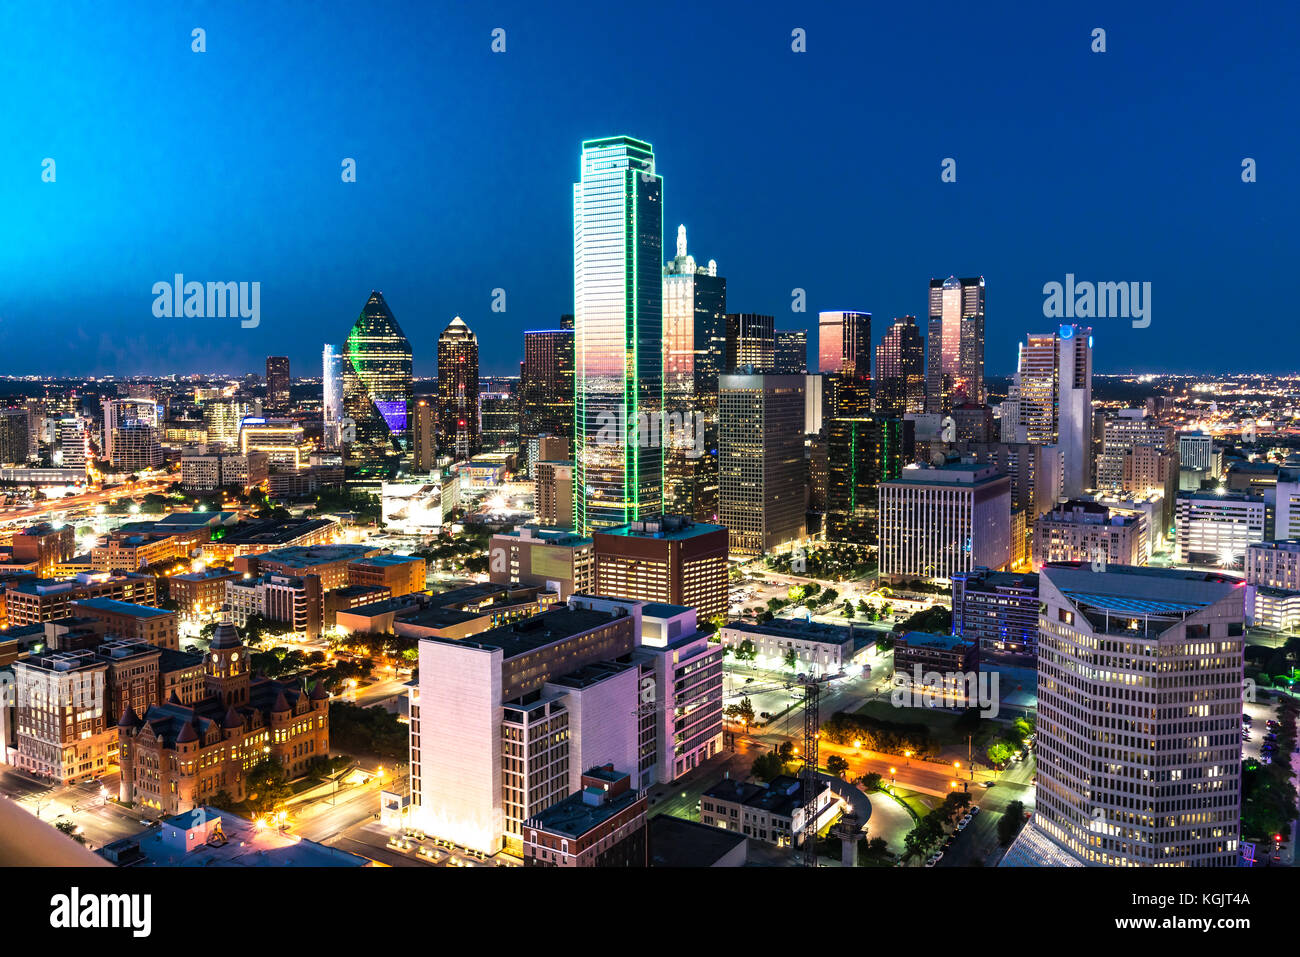 Vue aérienne de Dallas, Texas City skyline at night Banque D'Images